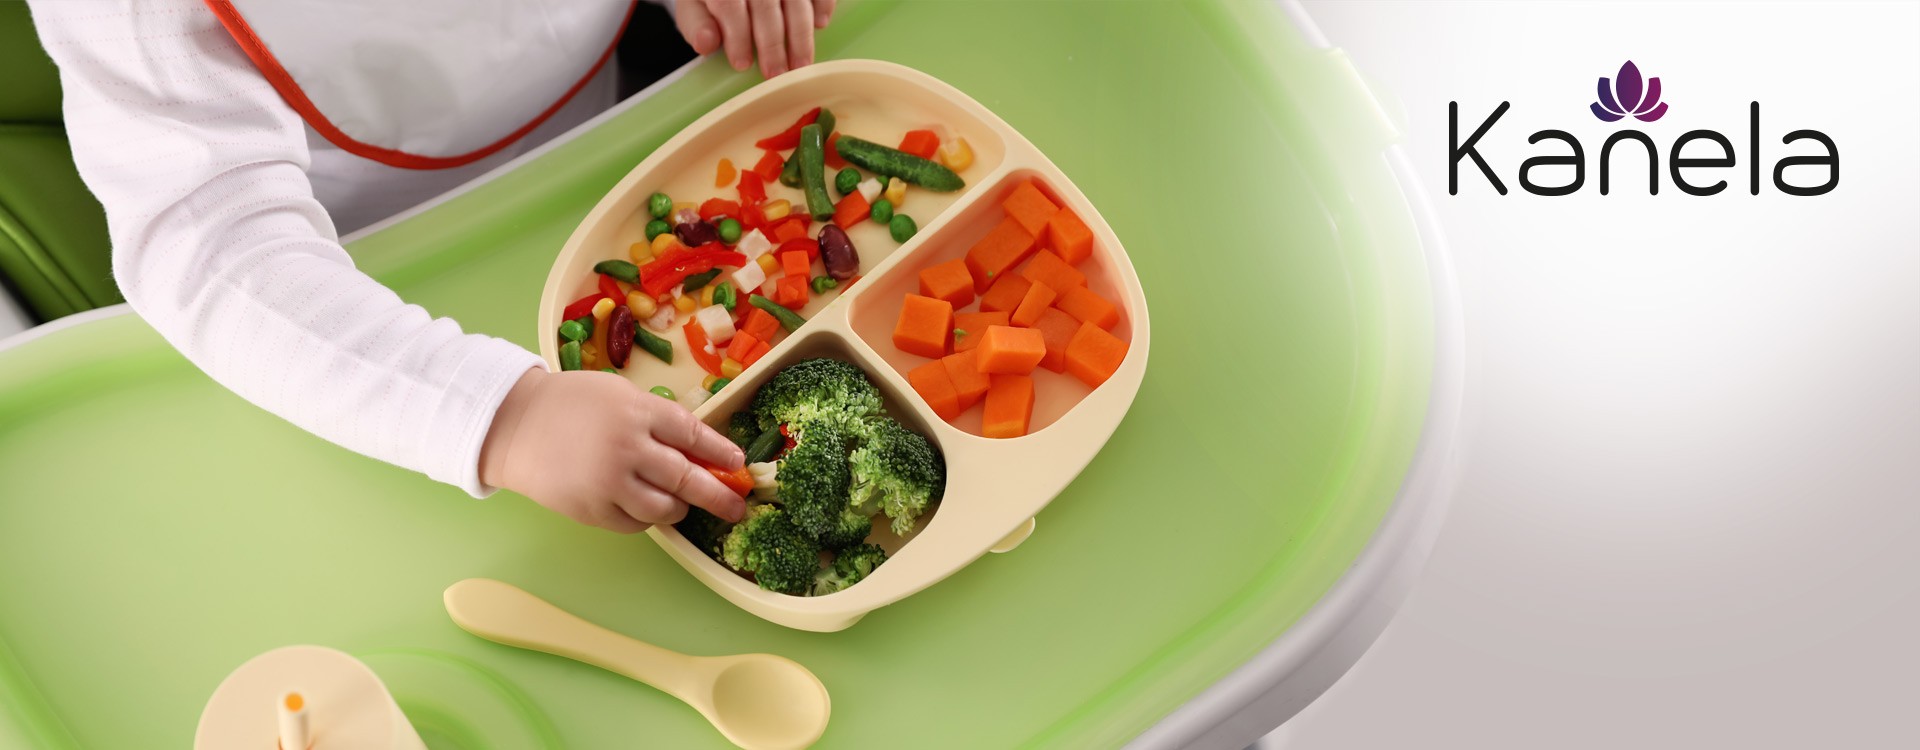 Ernährung bei Kleinkindern: Das passende Besteck bringt Freude am Essen